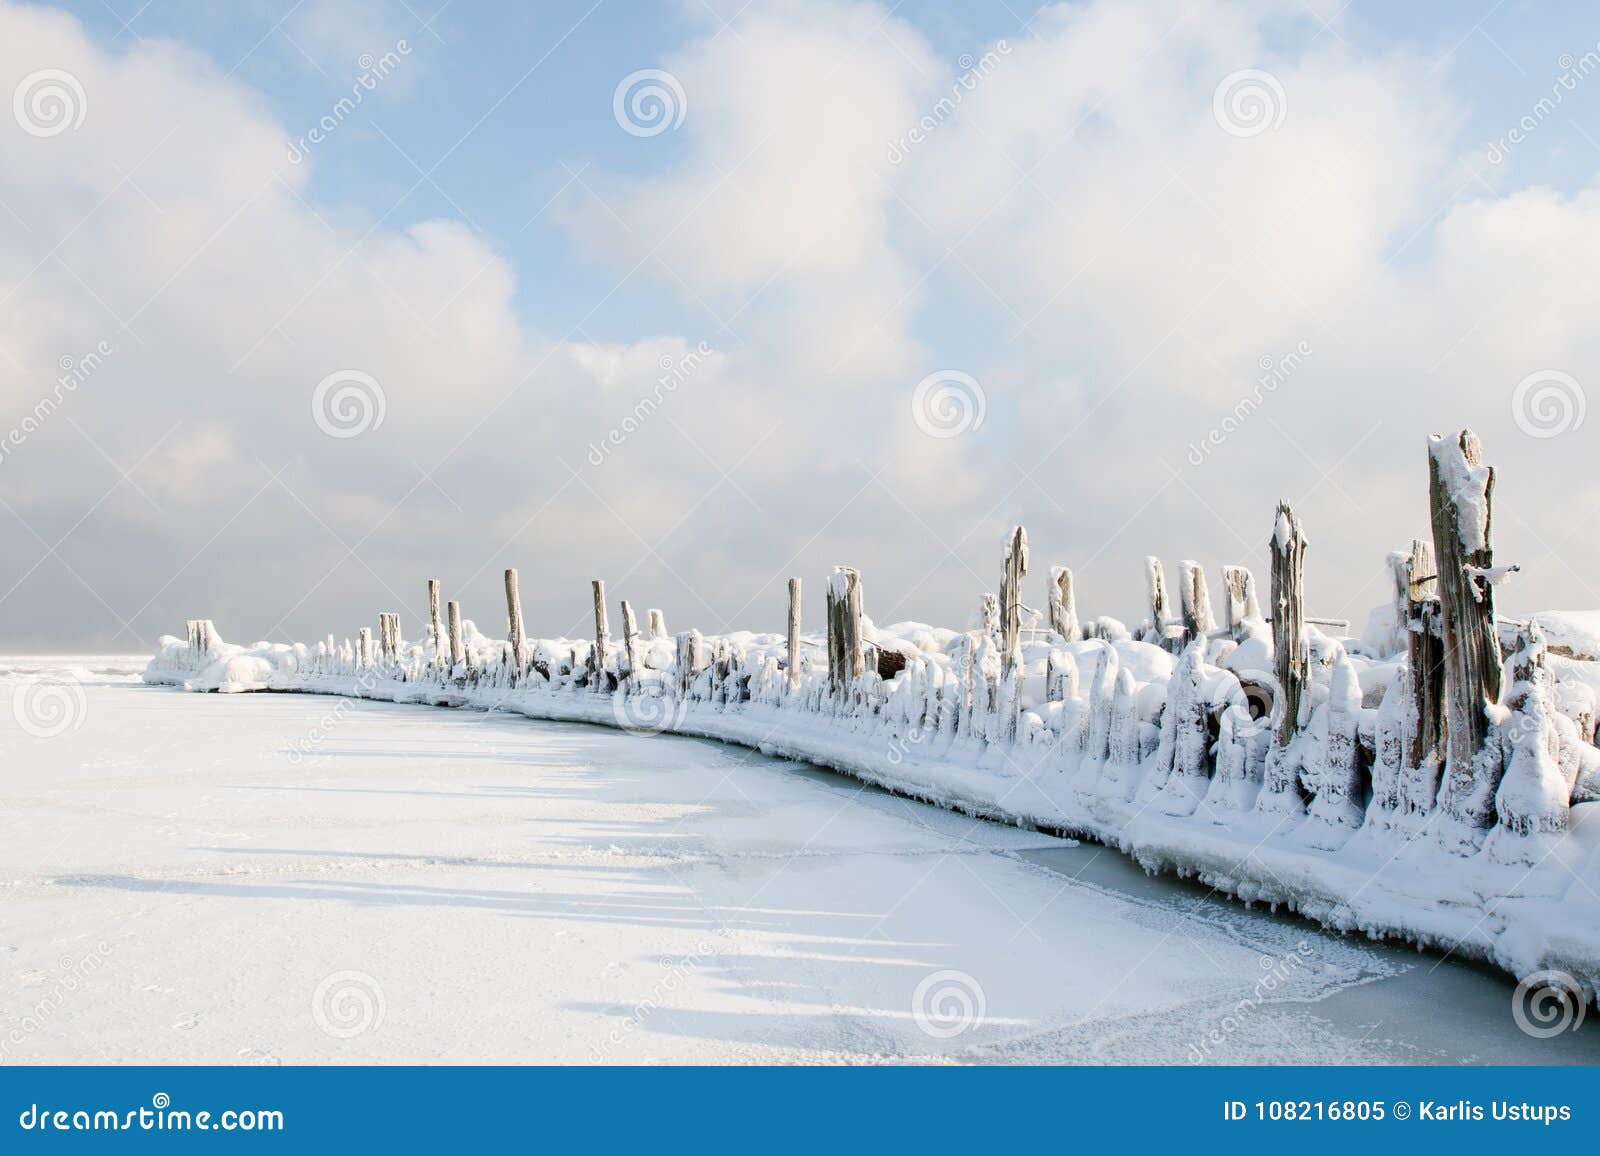 Rompeolas viejo cubierto en nieve. Engure, Letonia Rompeolas viejo del puerto de Engure cubierto en nieve e hielo en fondo del cielo nublado